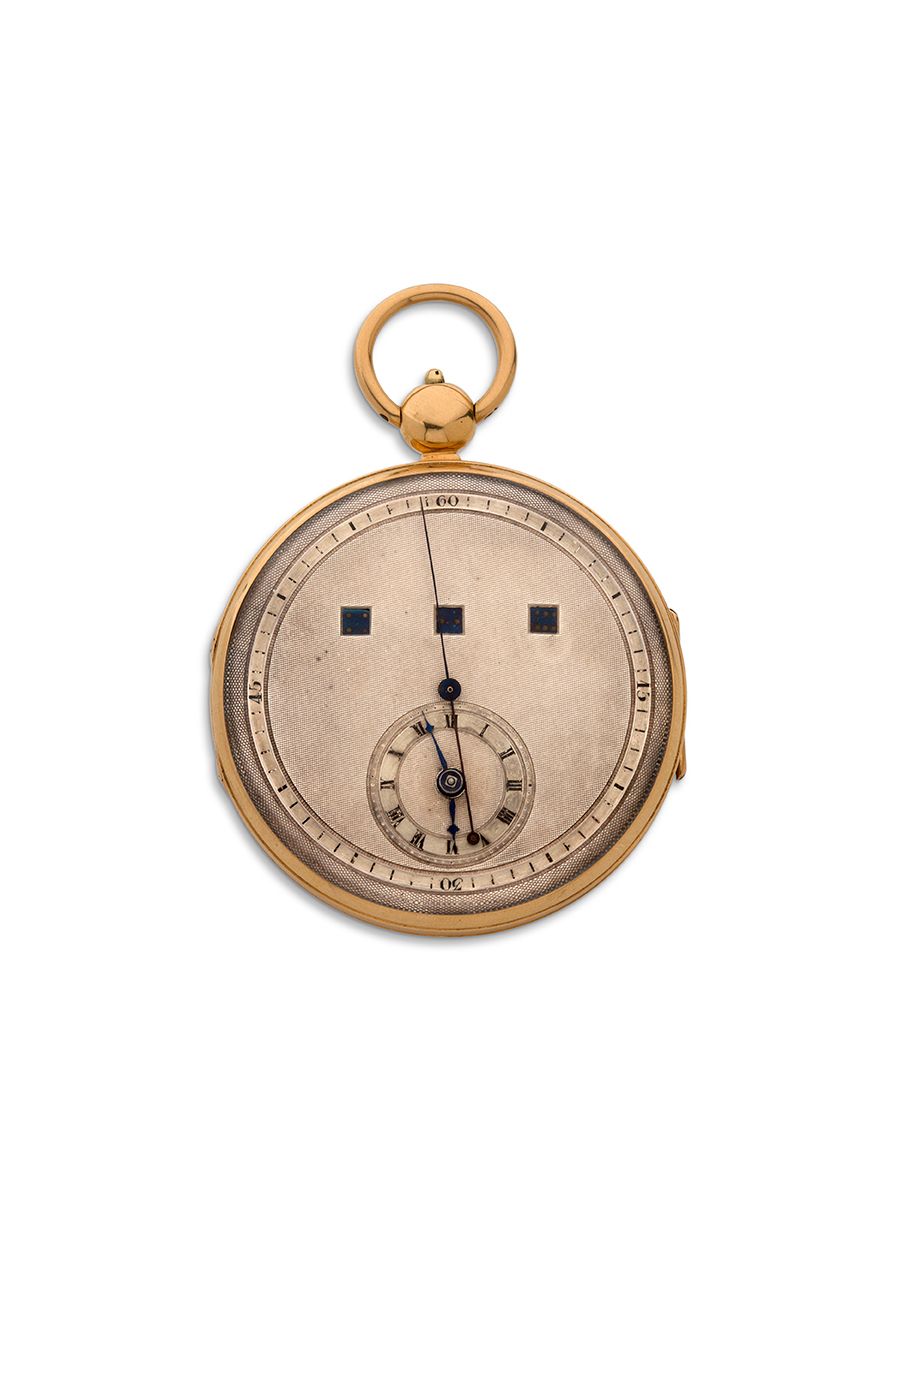 ANONYME 
Orologio da tasca in oro con quadrante regolatore, secondi al centro e &hellip;